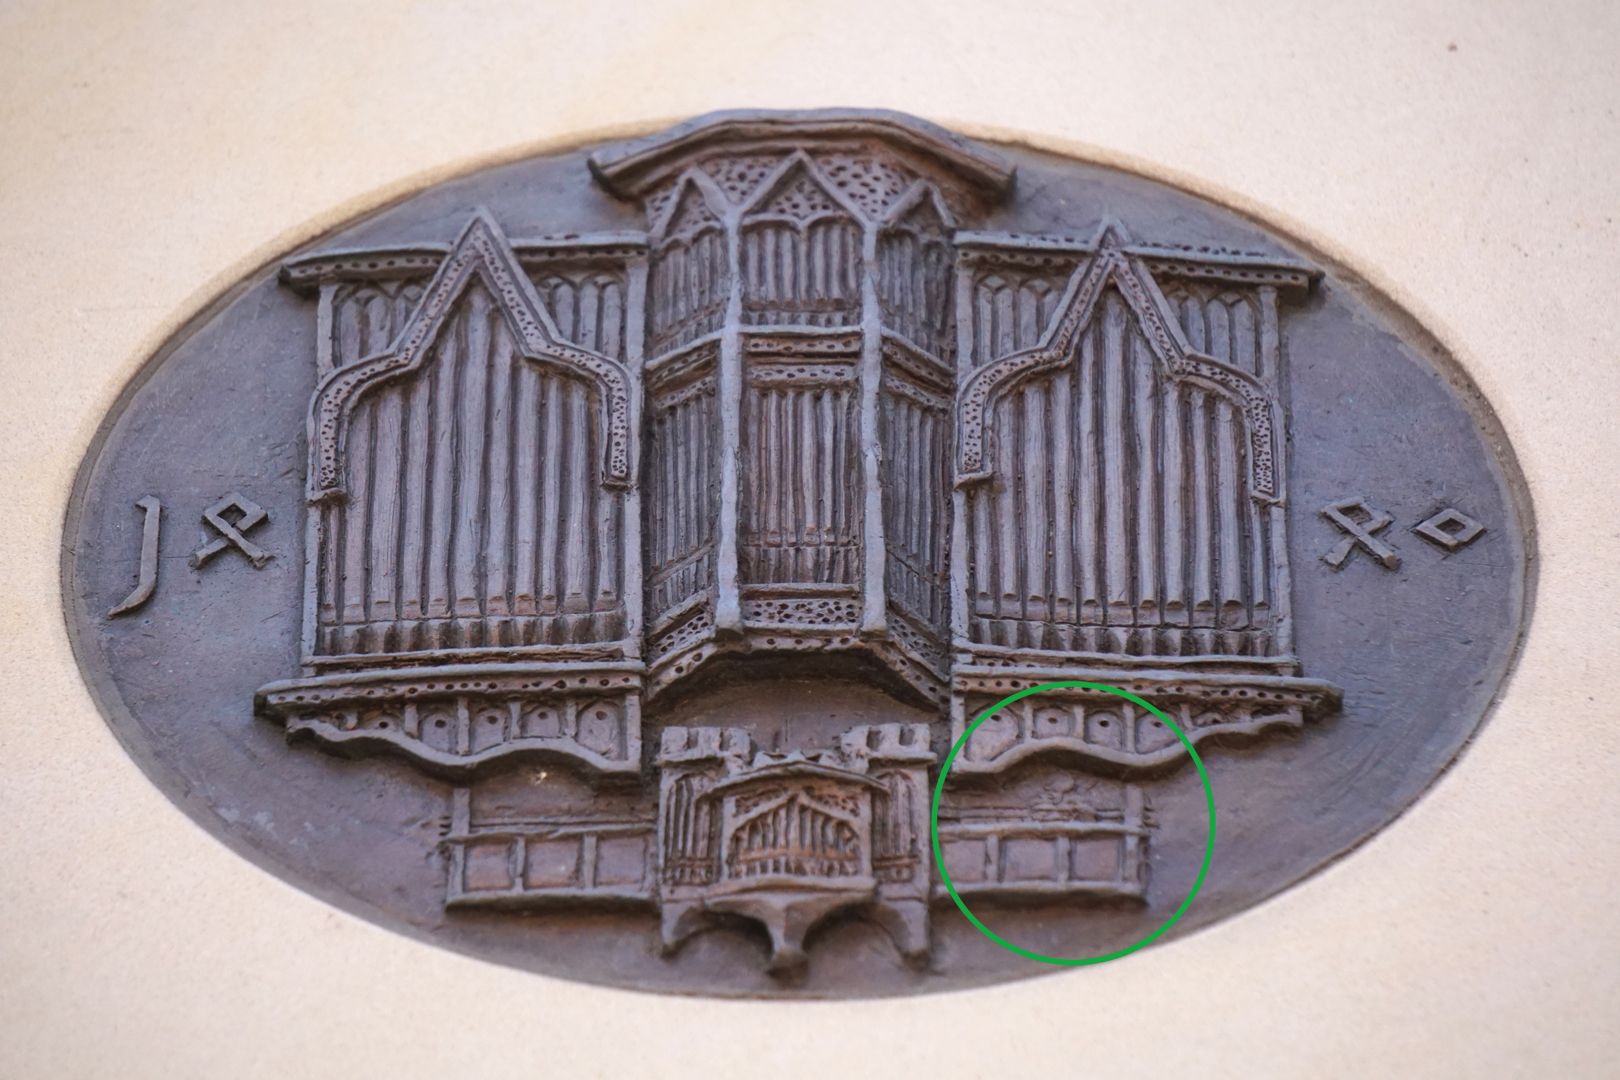 Pachelbel-Gedenktafel Darstellung der Traxdorf-Orgel; schemenhaft zu erkennen, Pachelbel auf der Orgelempore